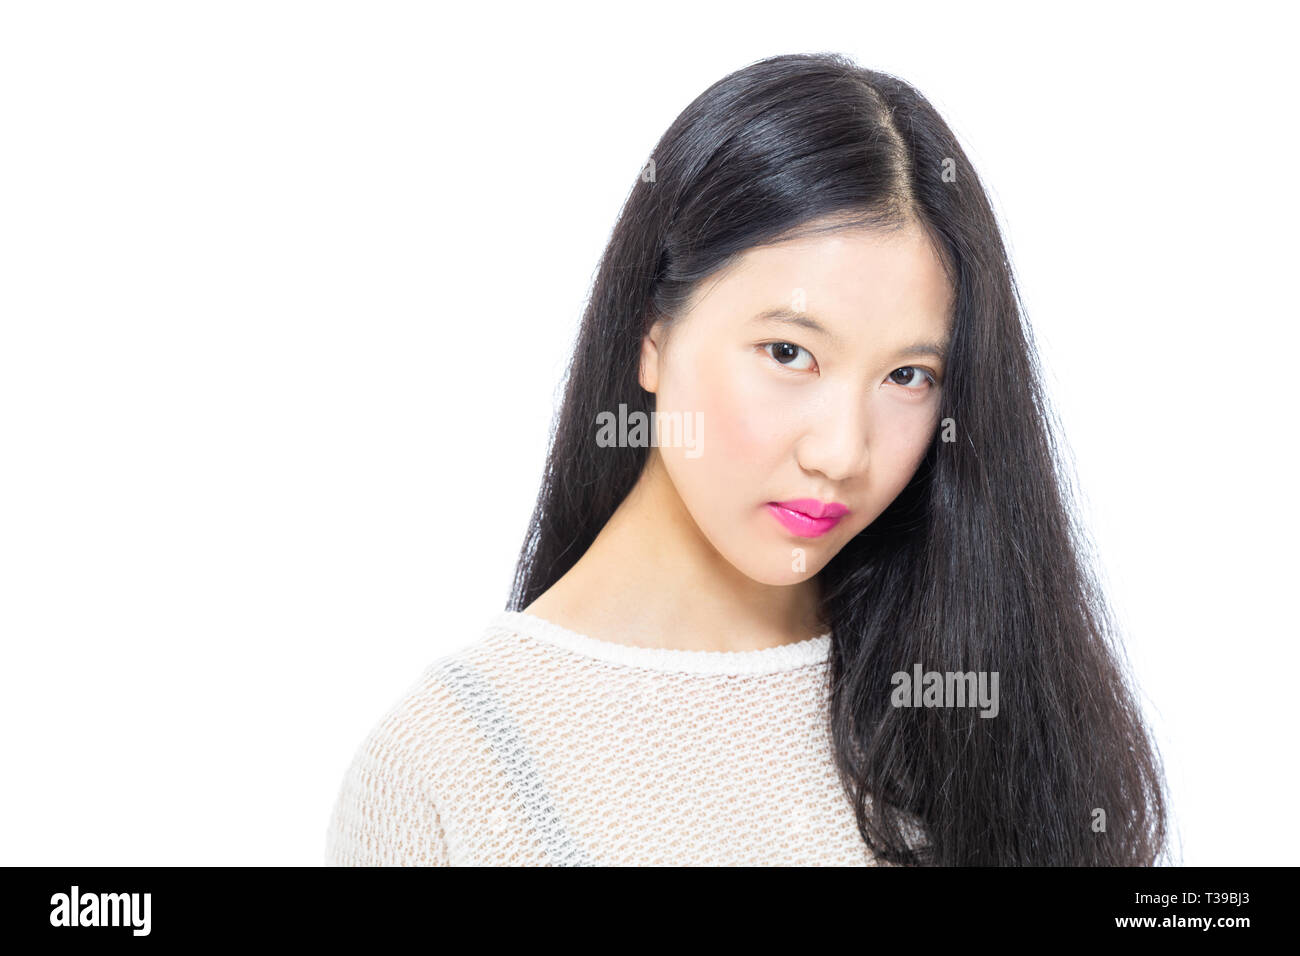 Teenage Asian high school girl ritratto con capelli pendenti davanti METÀ FACCIA Foto Stock